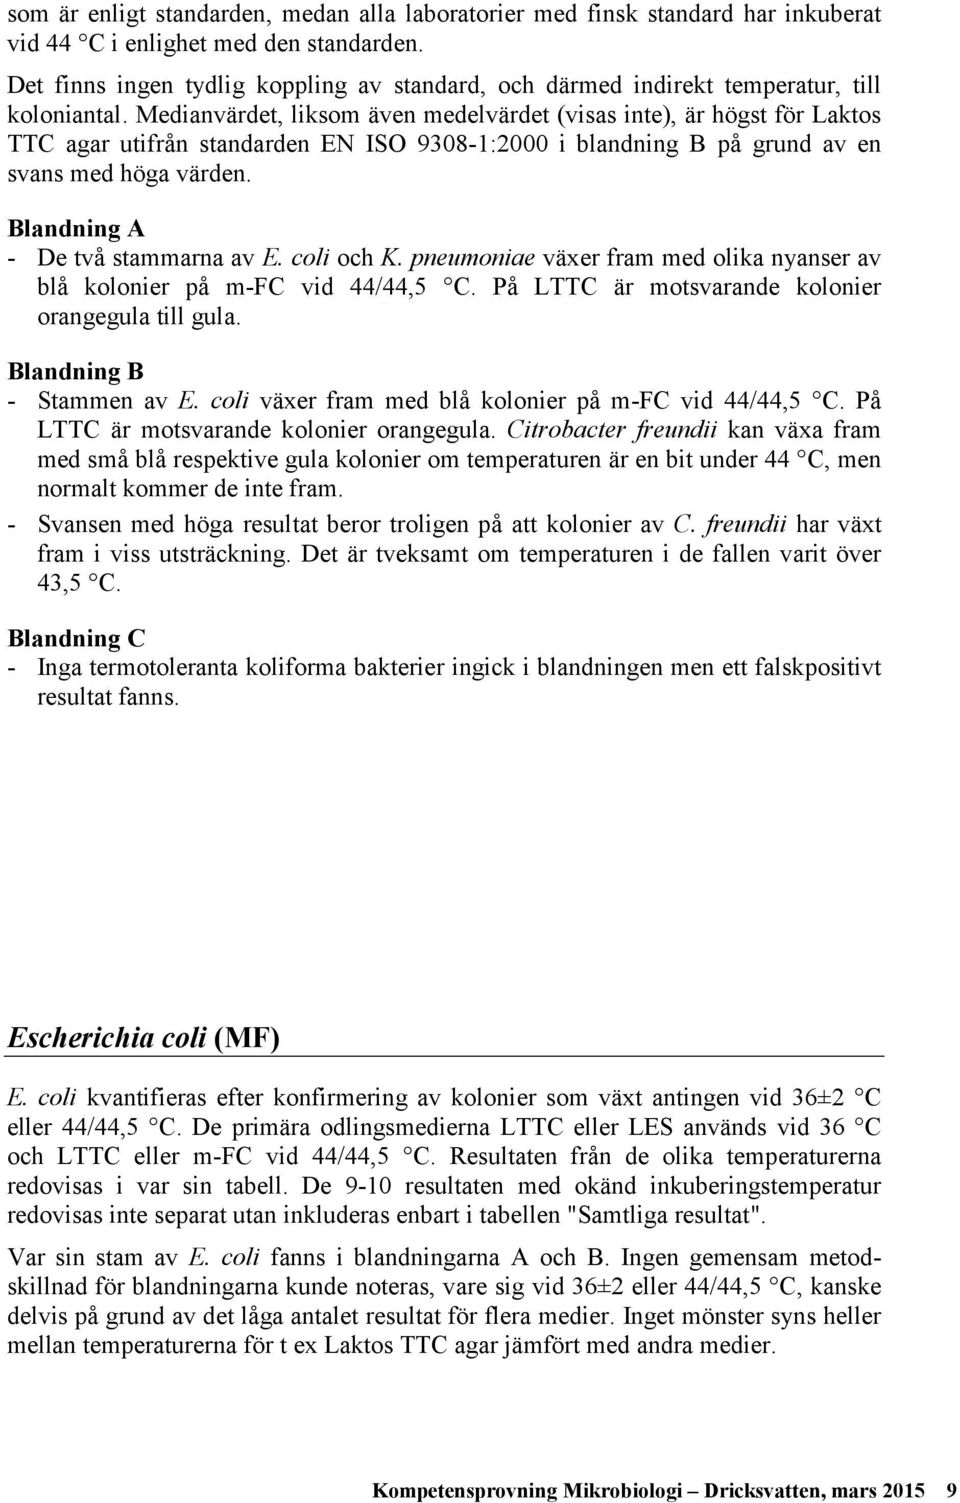 Medianvärdet, liksom även medelvärdet (visas inte), är högst för Laktos TTC agar utifrån standarden EN ISO 93-1:2 i blandning B på grund av en svans med höga värden.